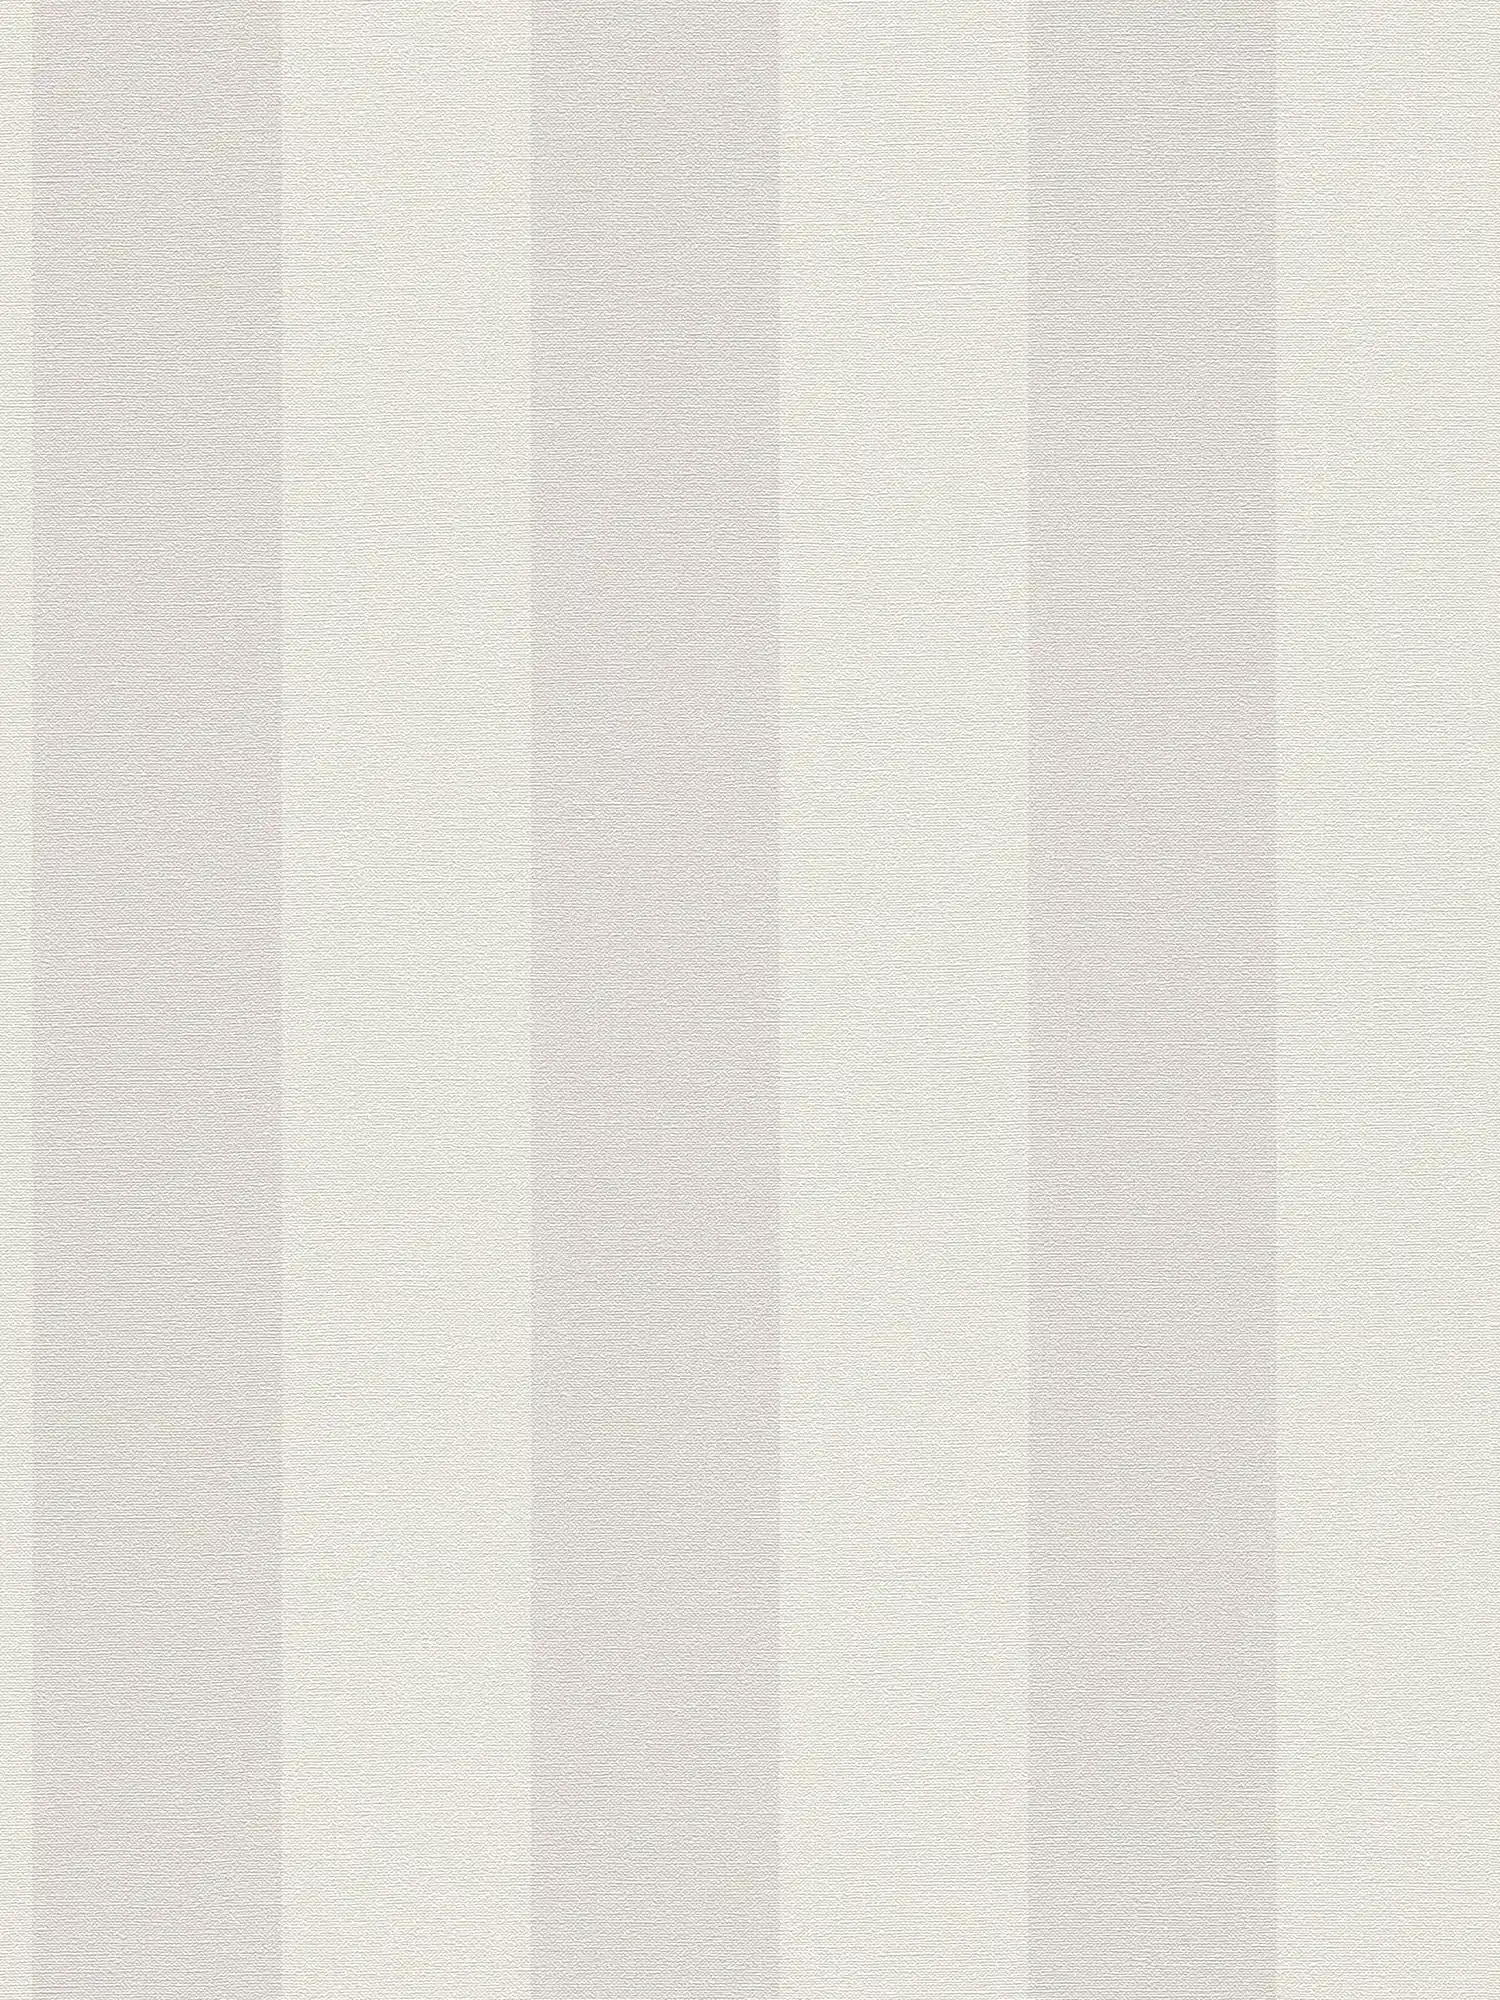 Carta da parati in tessuto non tessuto a righe con aspetto lino senza PVC - grigio, bianco
